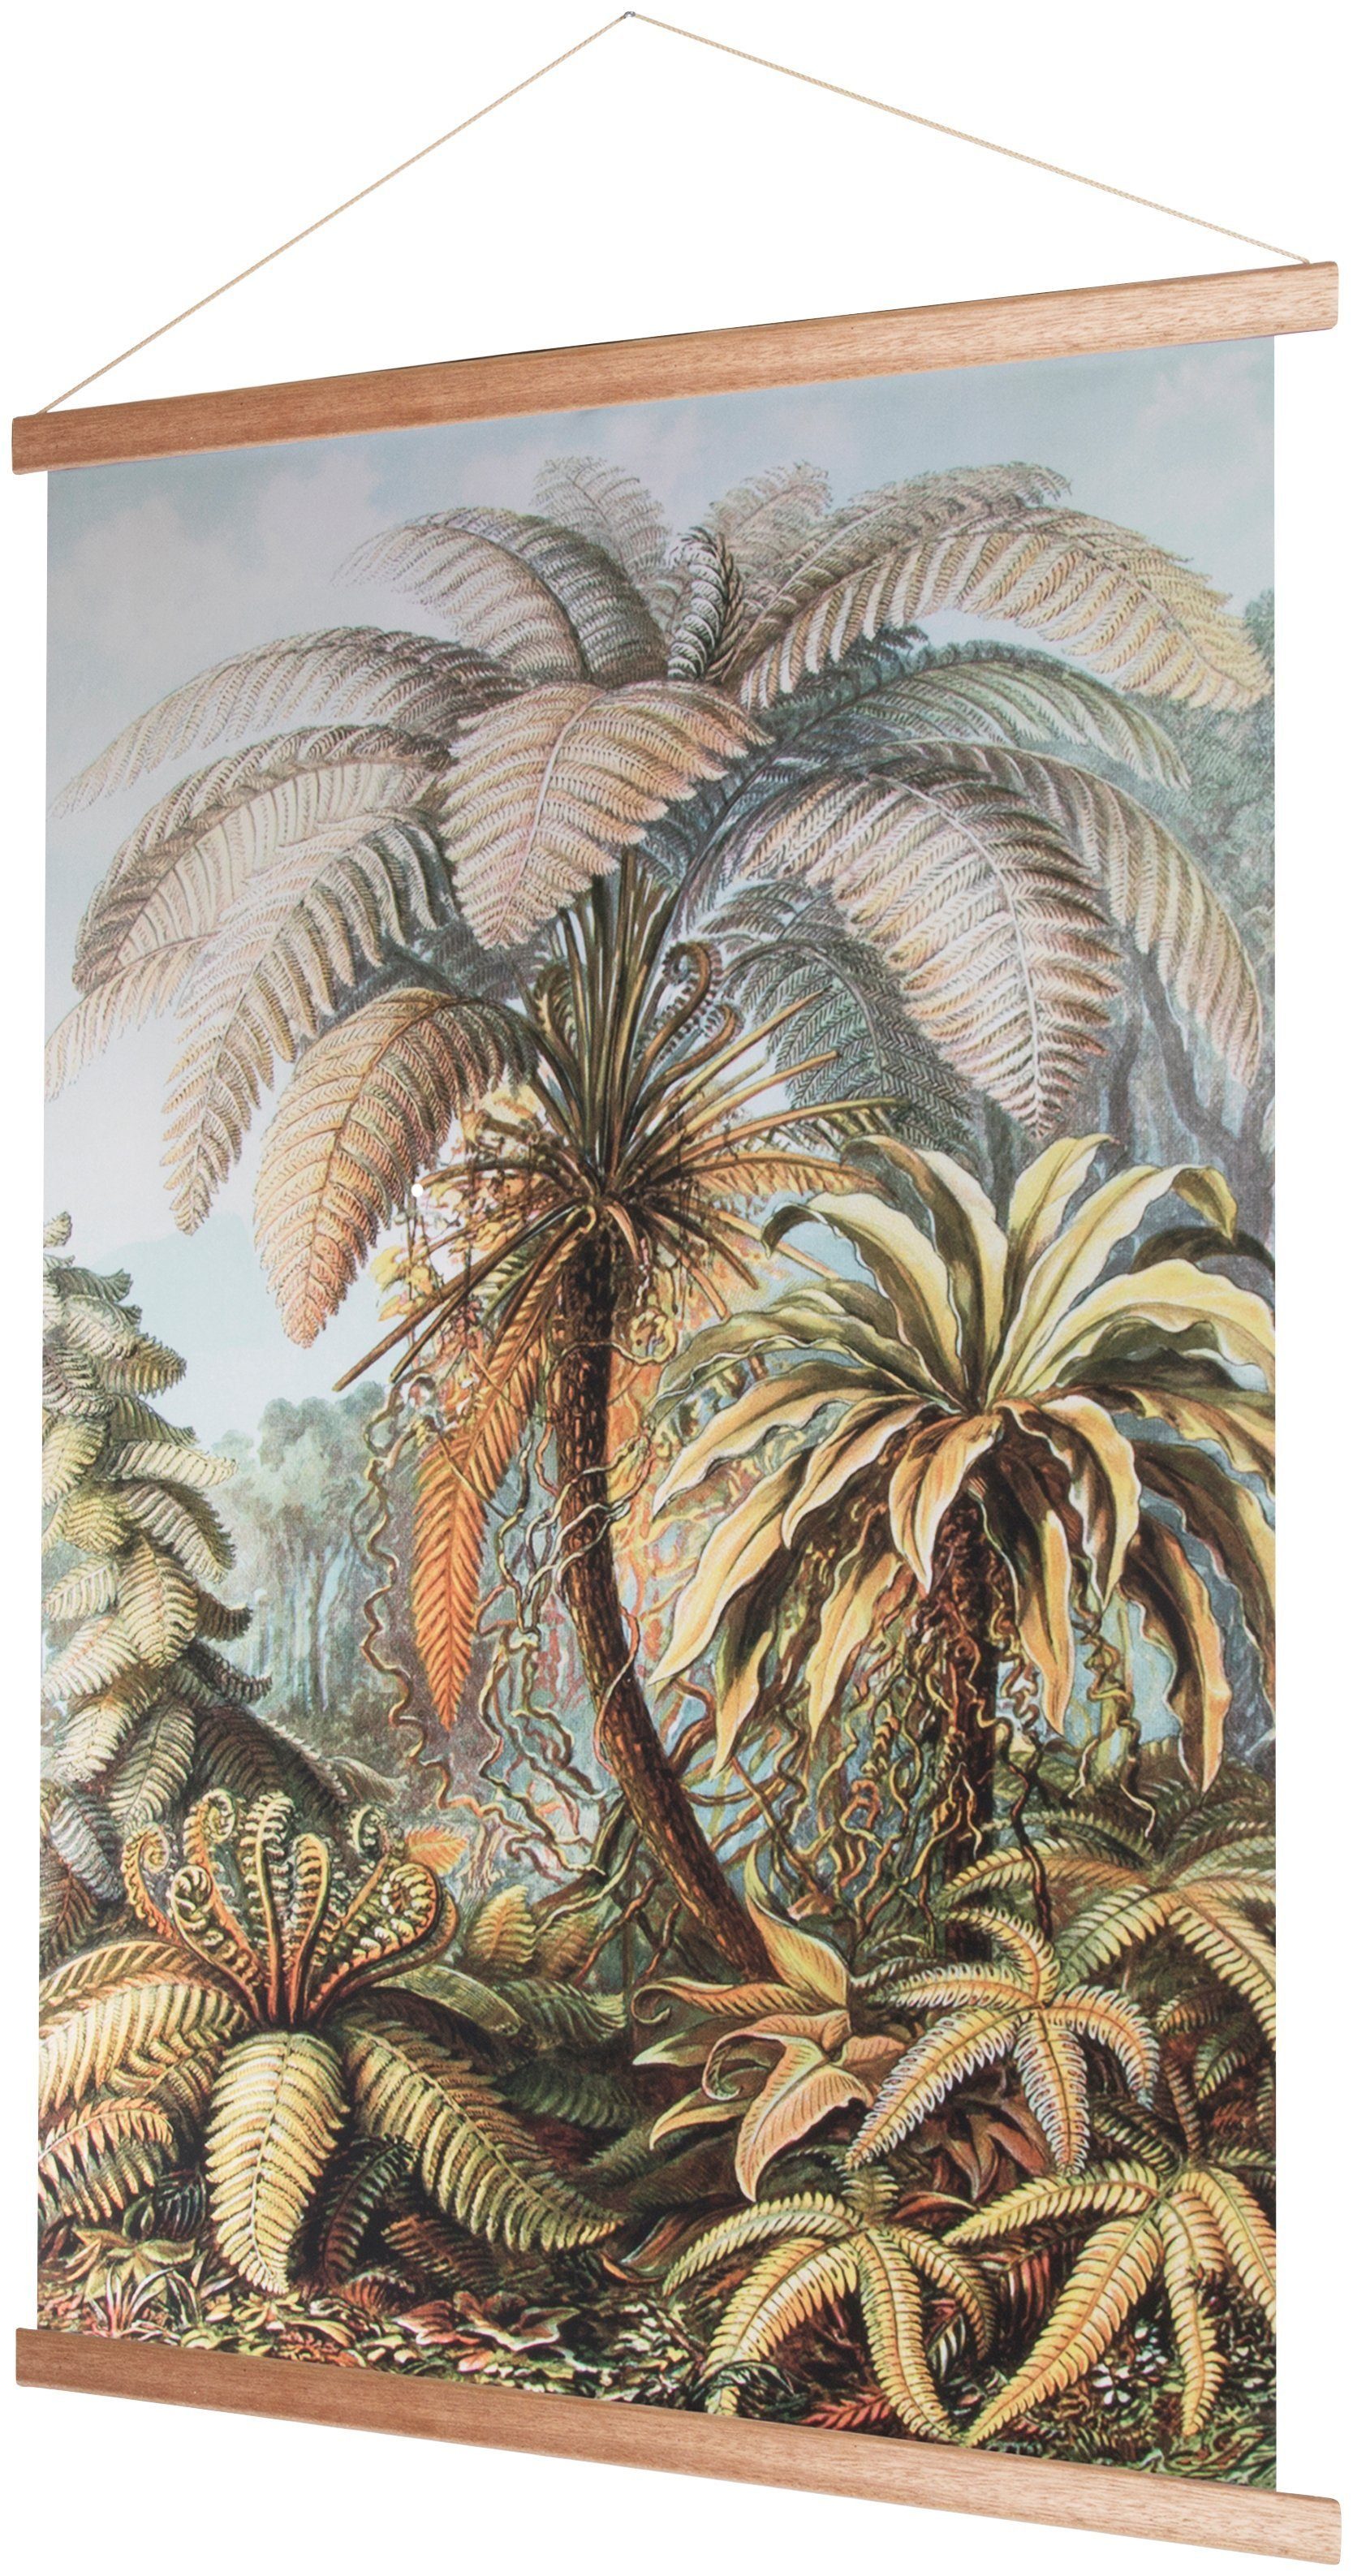 Art for the home Bild, Wandbild, Pflanzen, Wandposter Poster Poster, Dschungel, 100x70cm